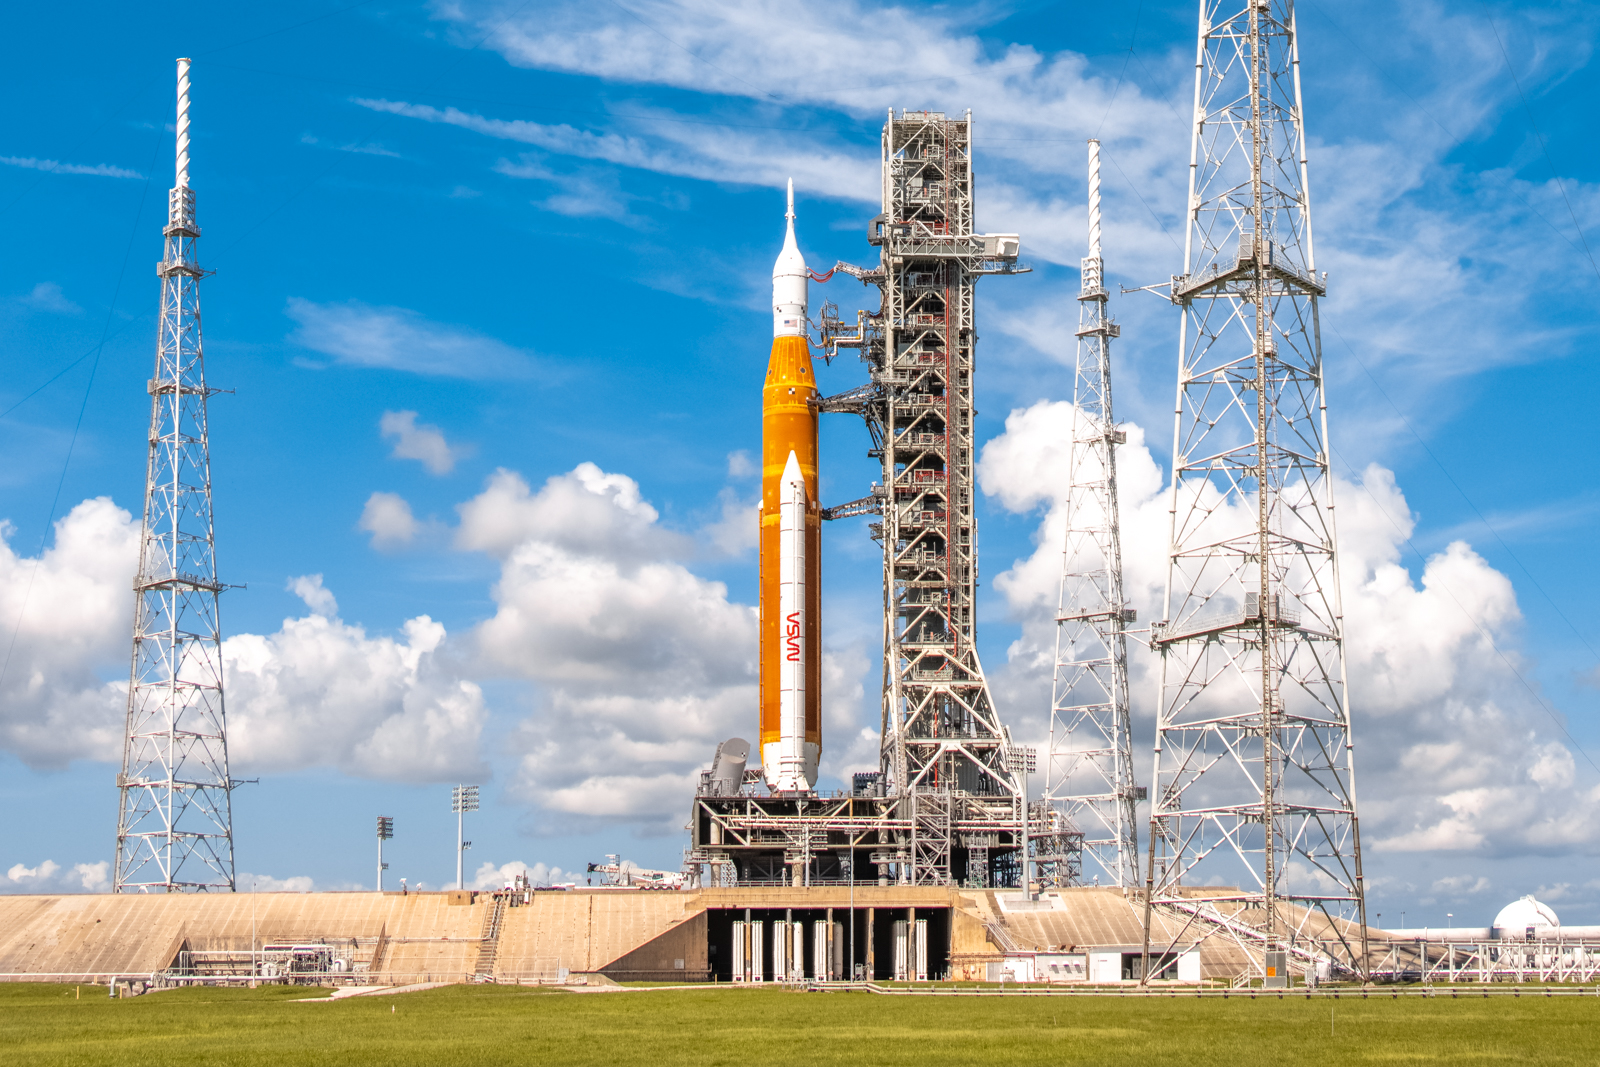 NASA ujawniła pierwszy stopień rakiety SLS dla misji Artemis II, która wyśle ludzi wokół Księżyca na statku kosmicznym Orion